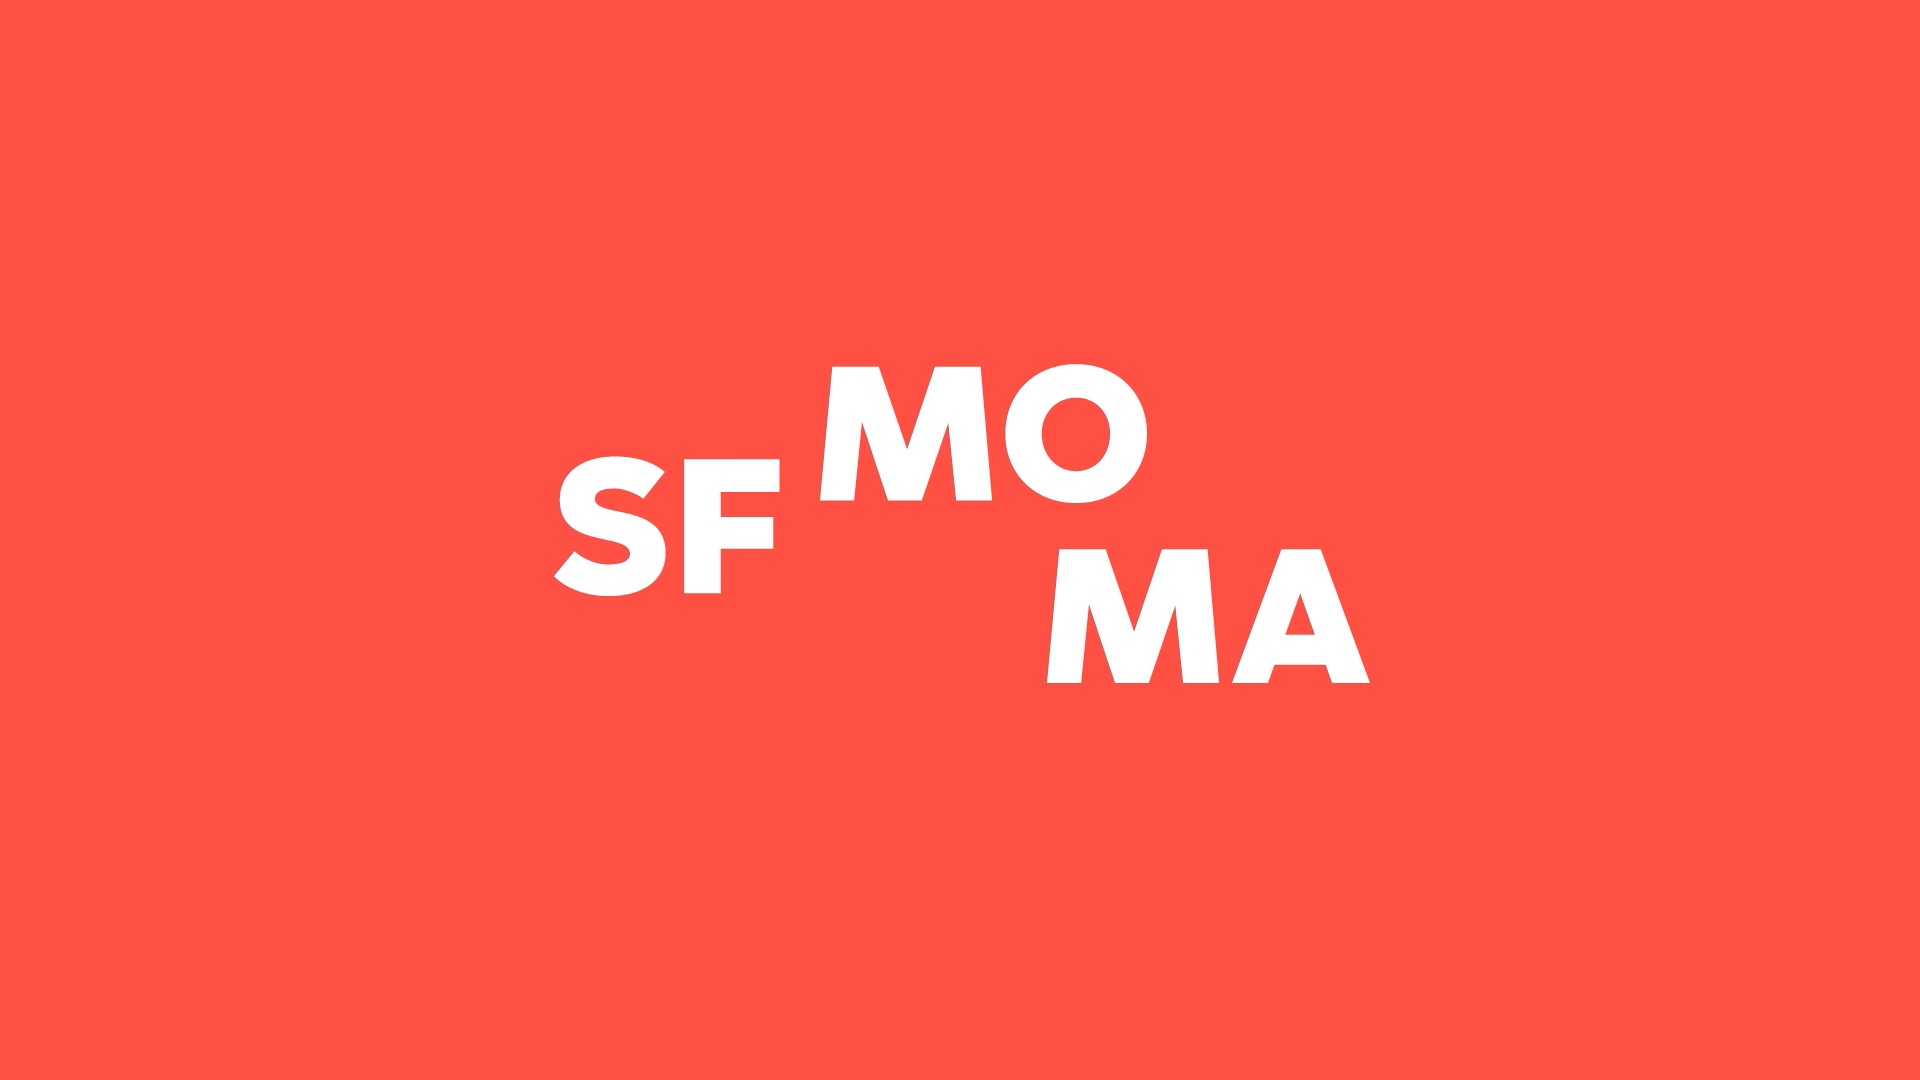 SFMOMA Text Offc